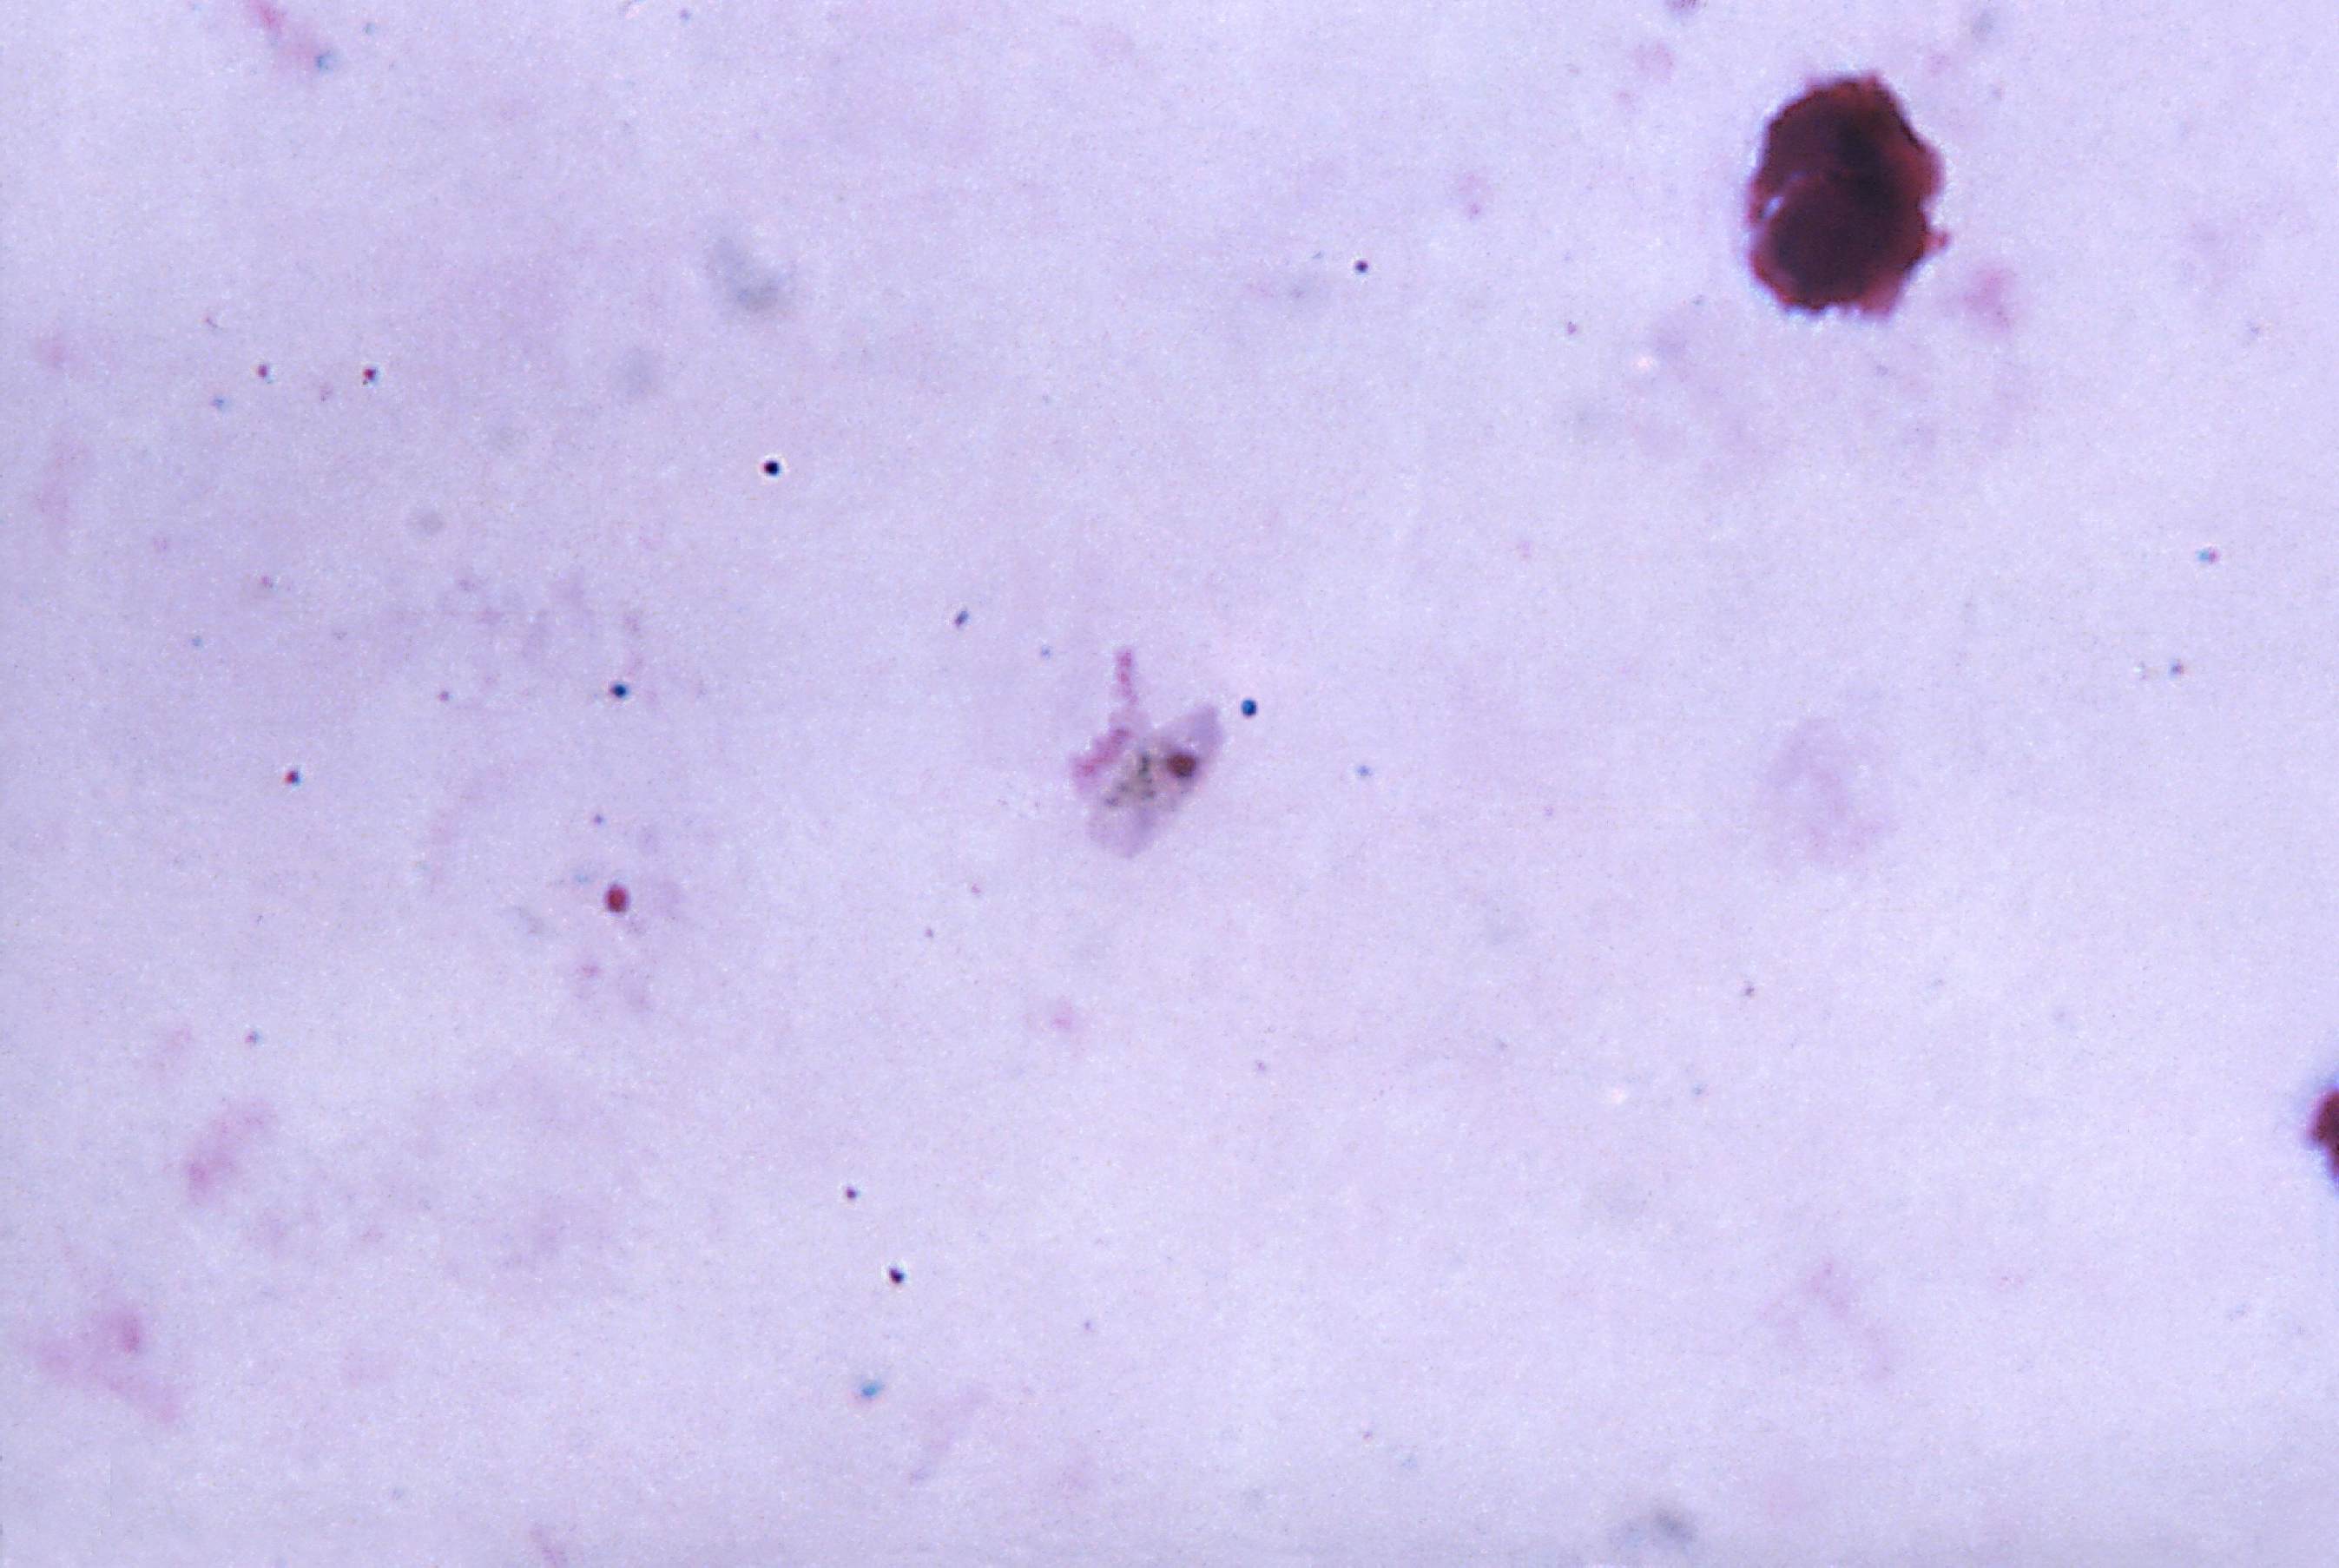 Многочисленные мелкие тельца. P. falciparum gametocyte pic.